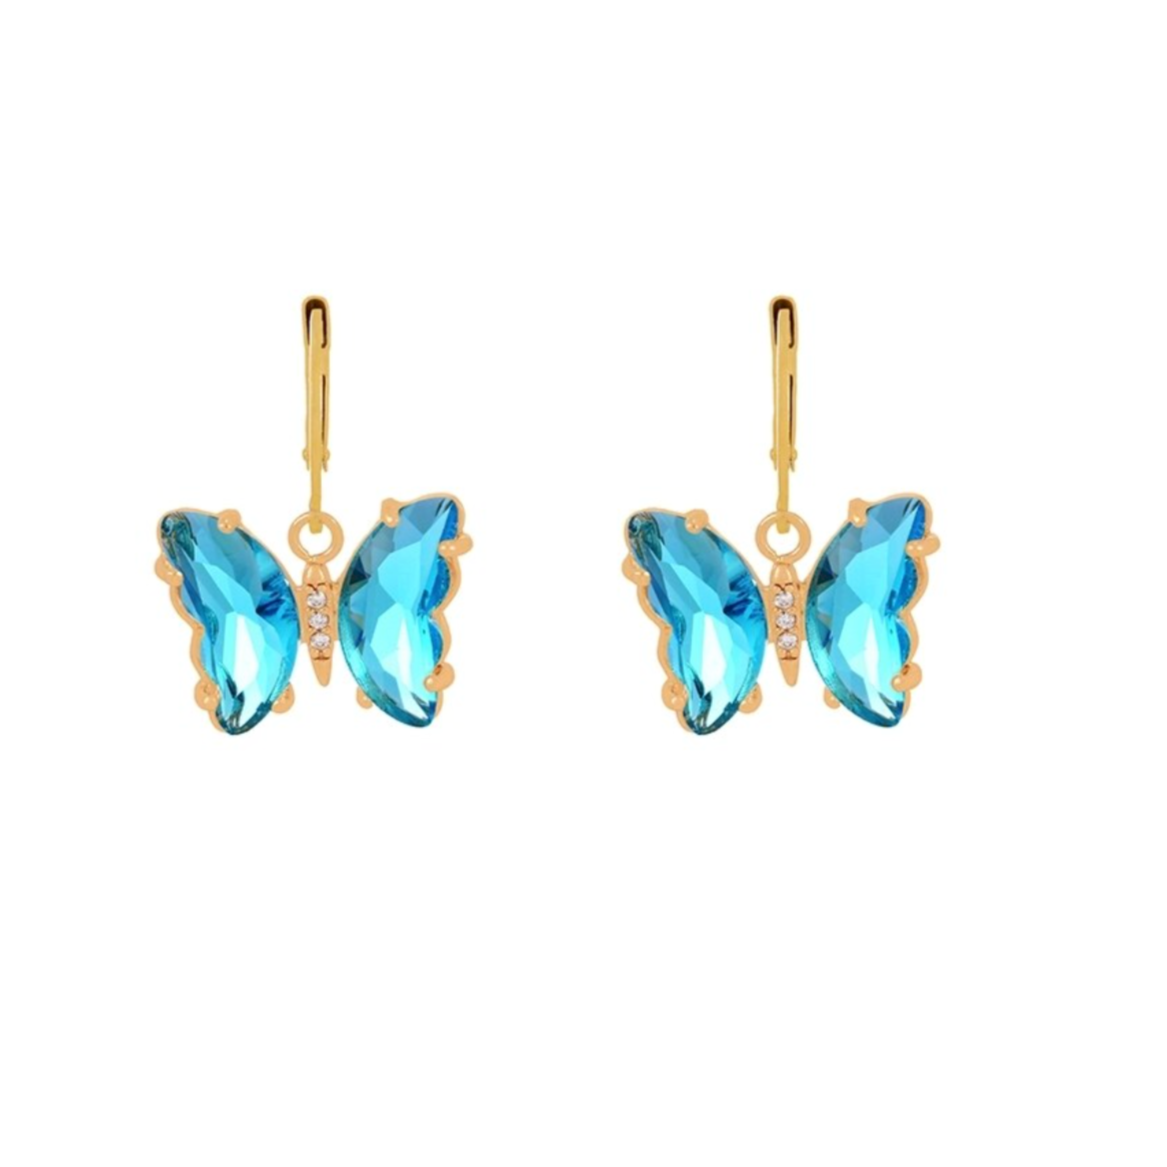 Boucles d'oreilles dorées pendantes papillons strass turquoise. Détails produit : Couleur or. Métal doré. Strass.